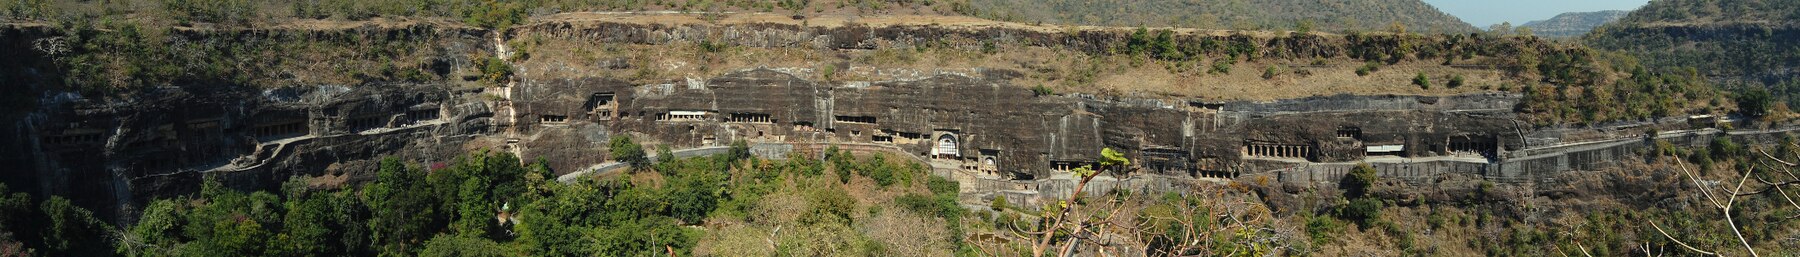 Ajanta caves (Aurangabad) banner.jpg